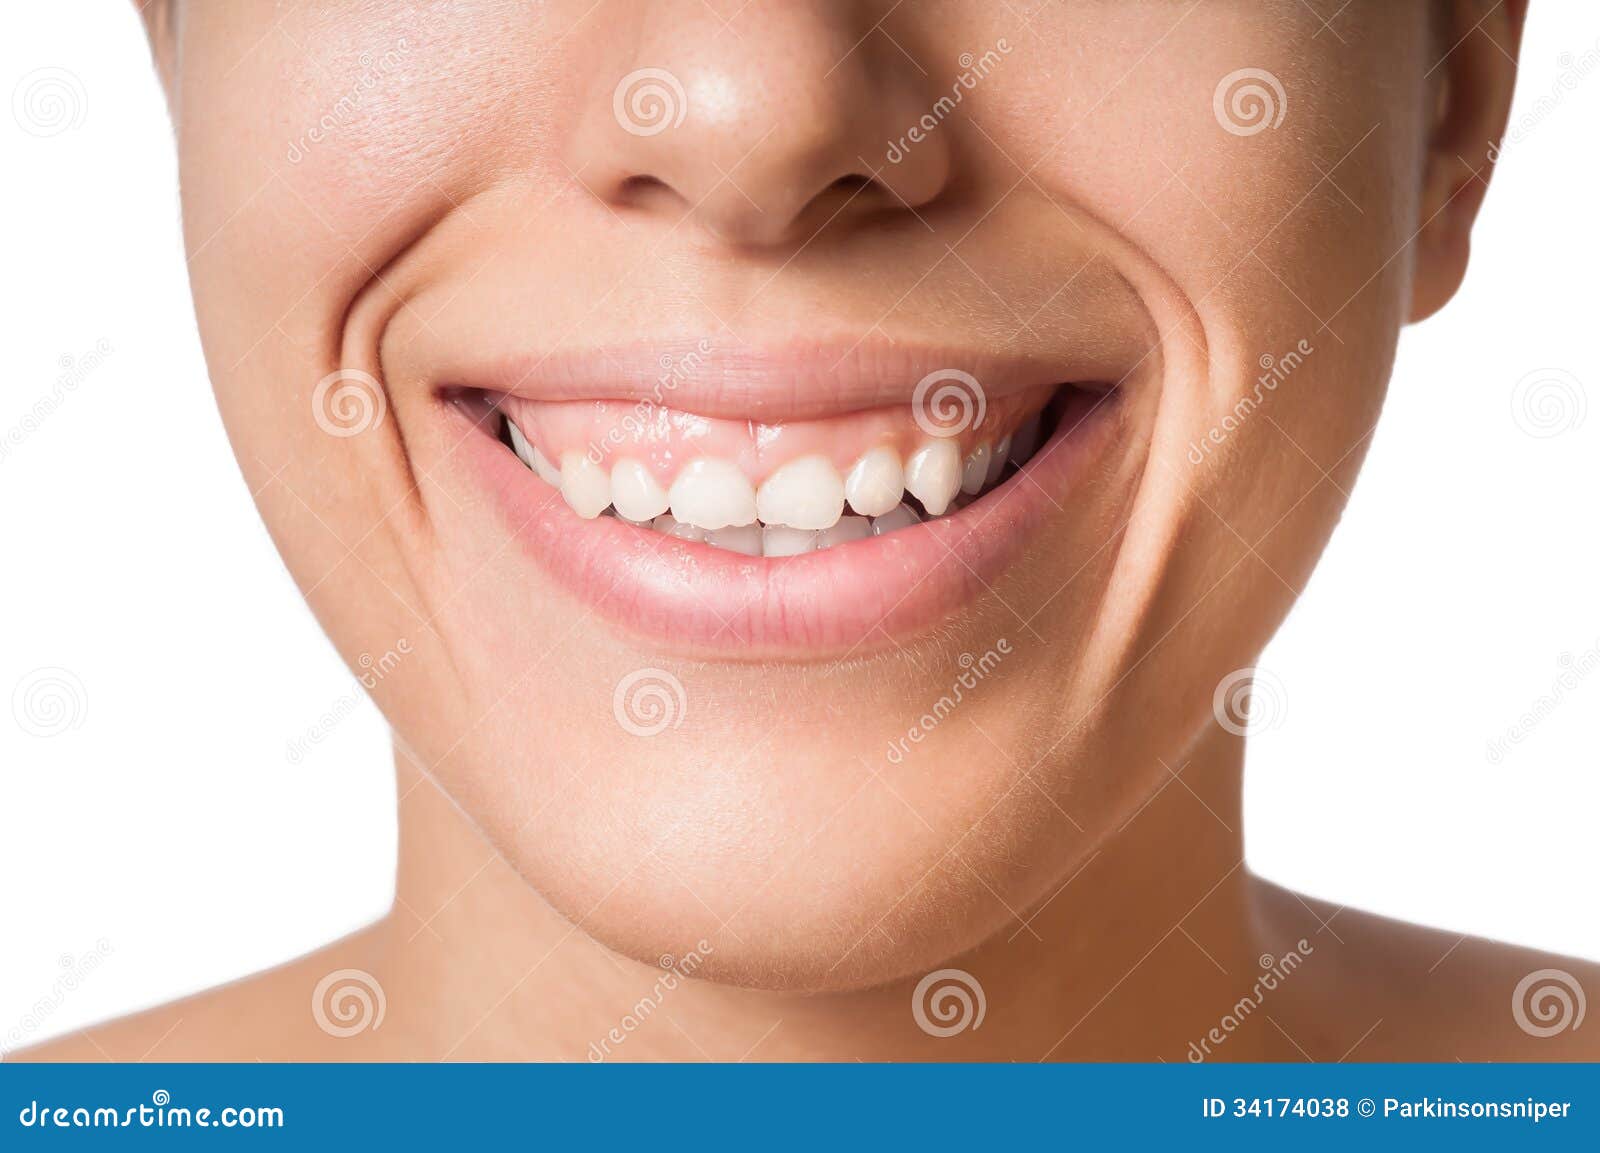 small teeth